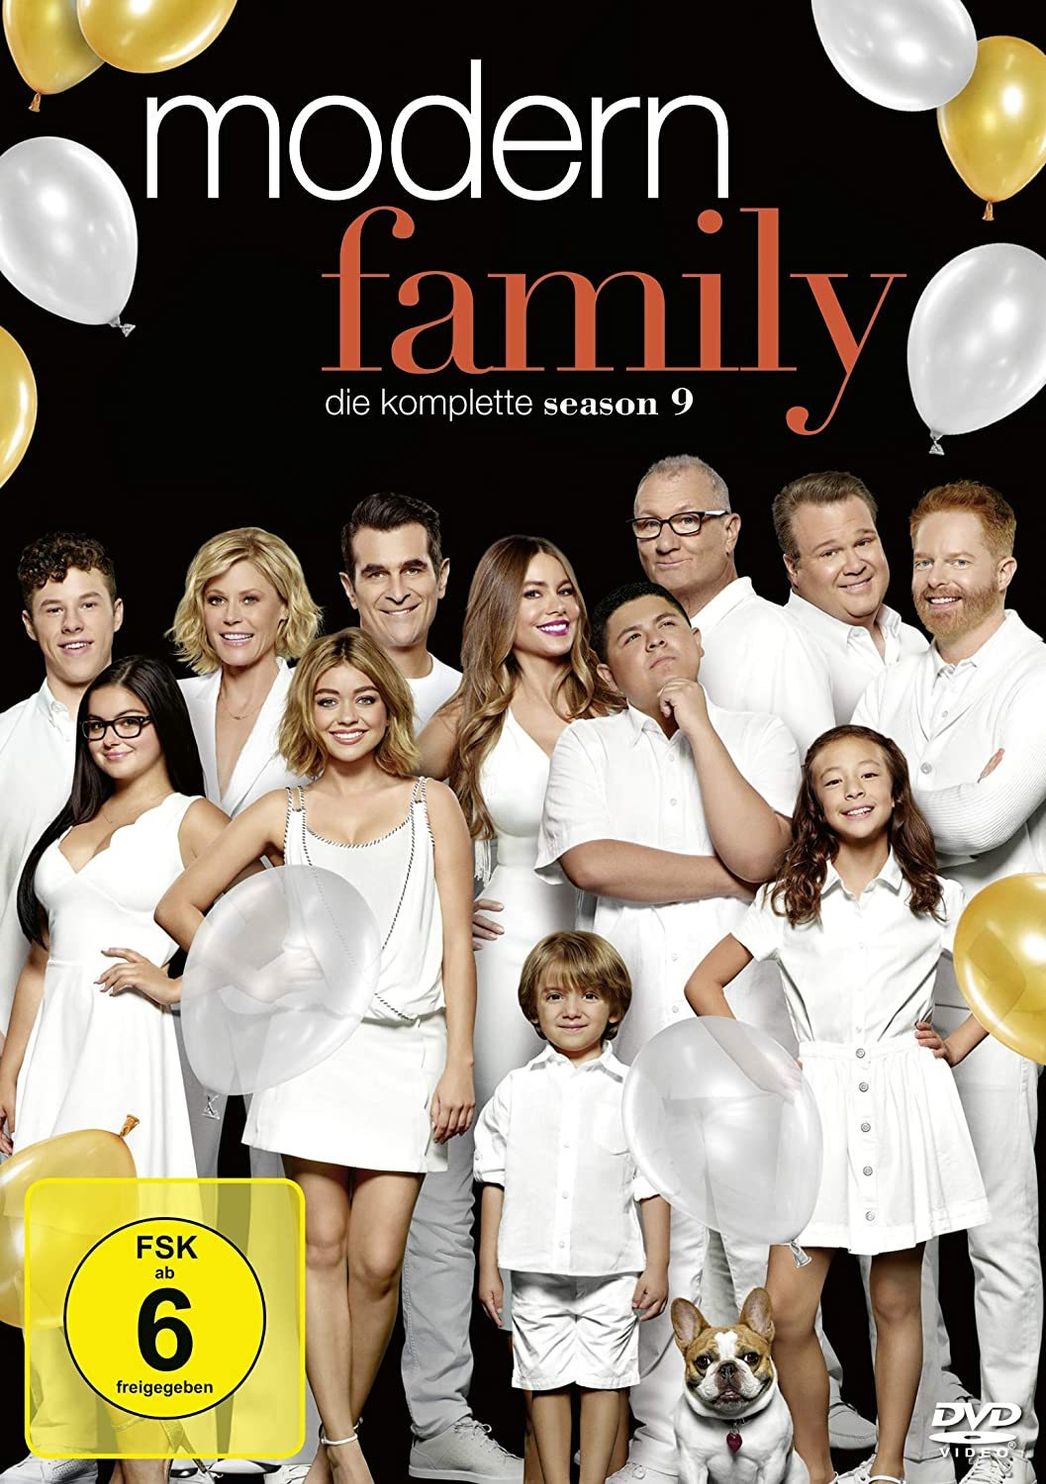 Modern Family - Season 9 DVD bei Weltbild.at bestellen